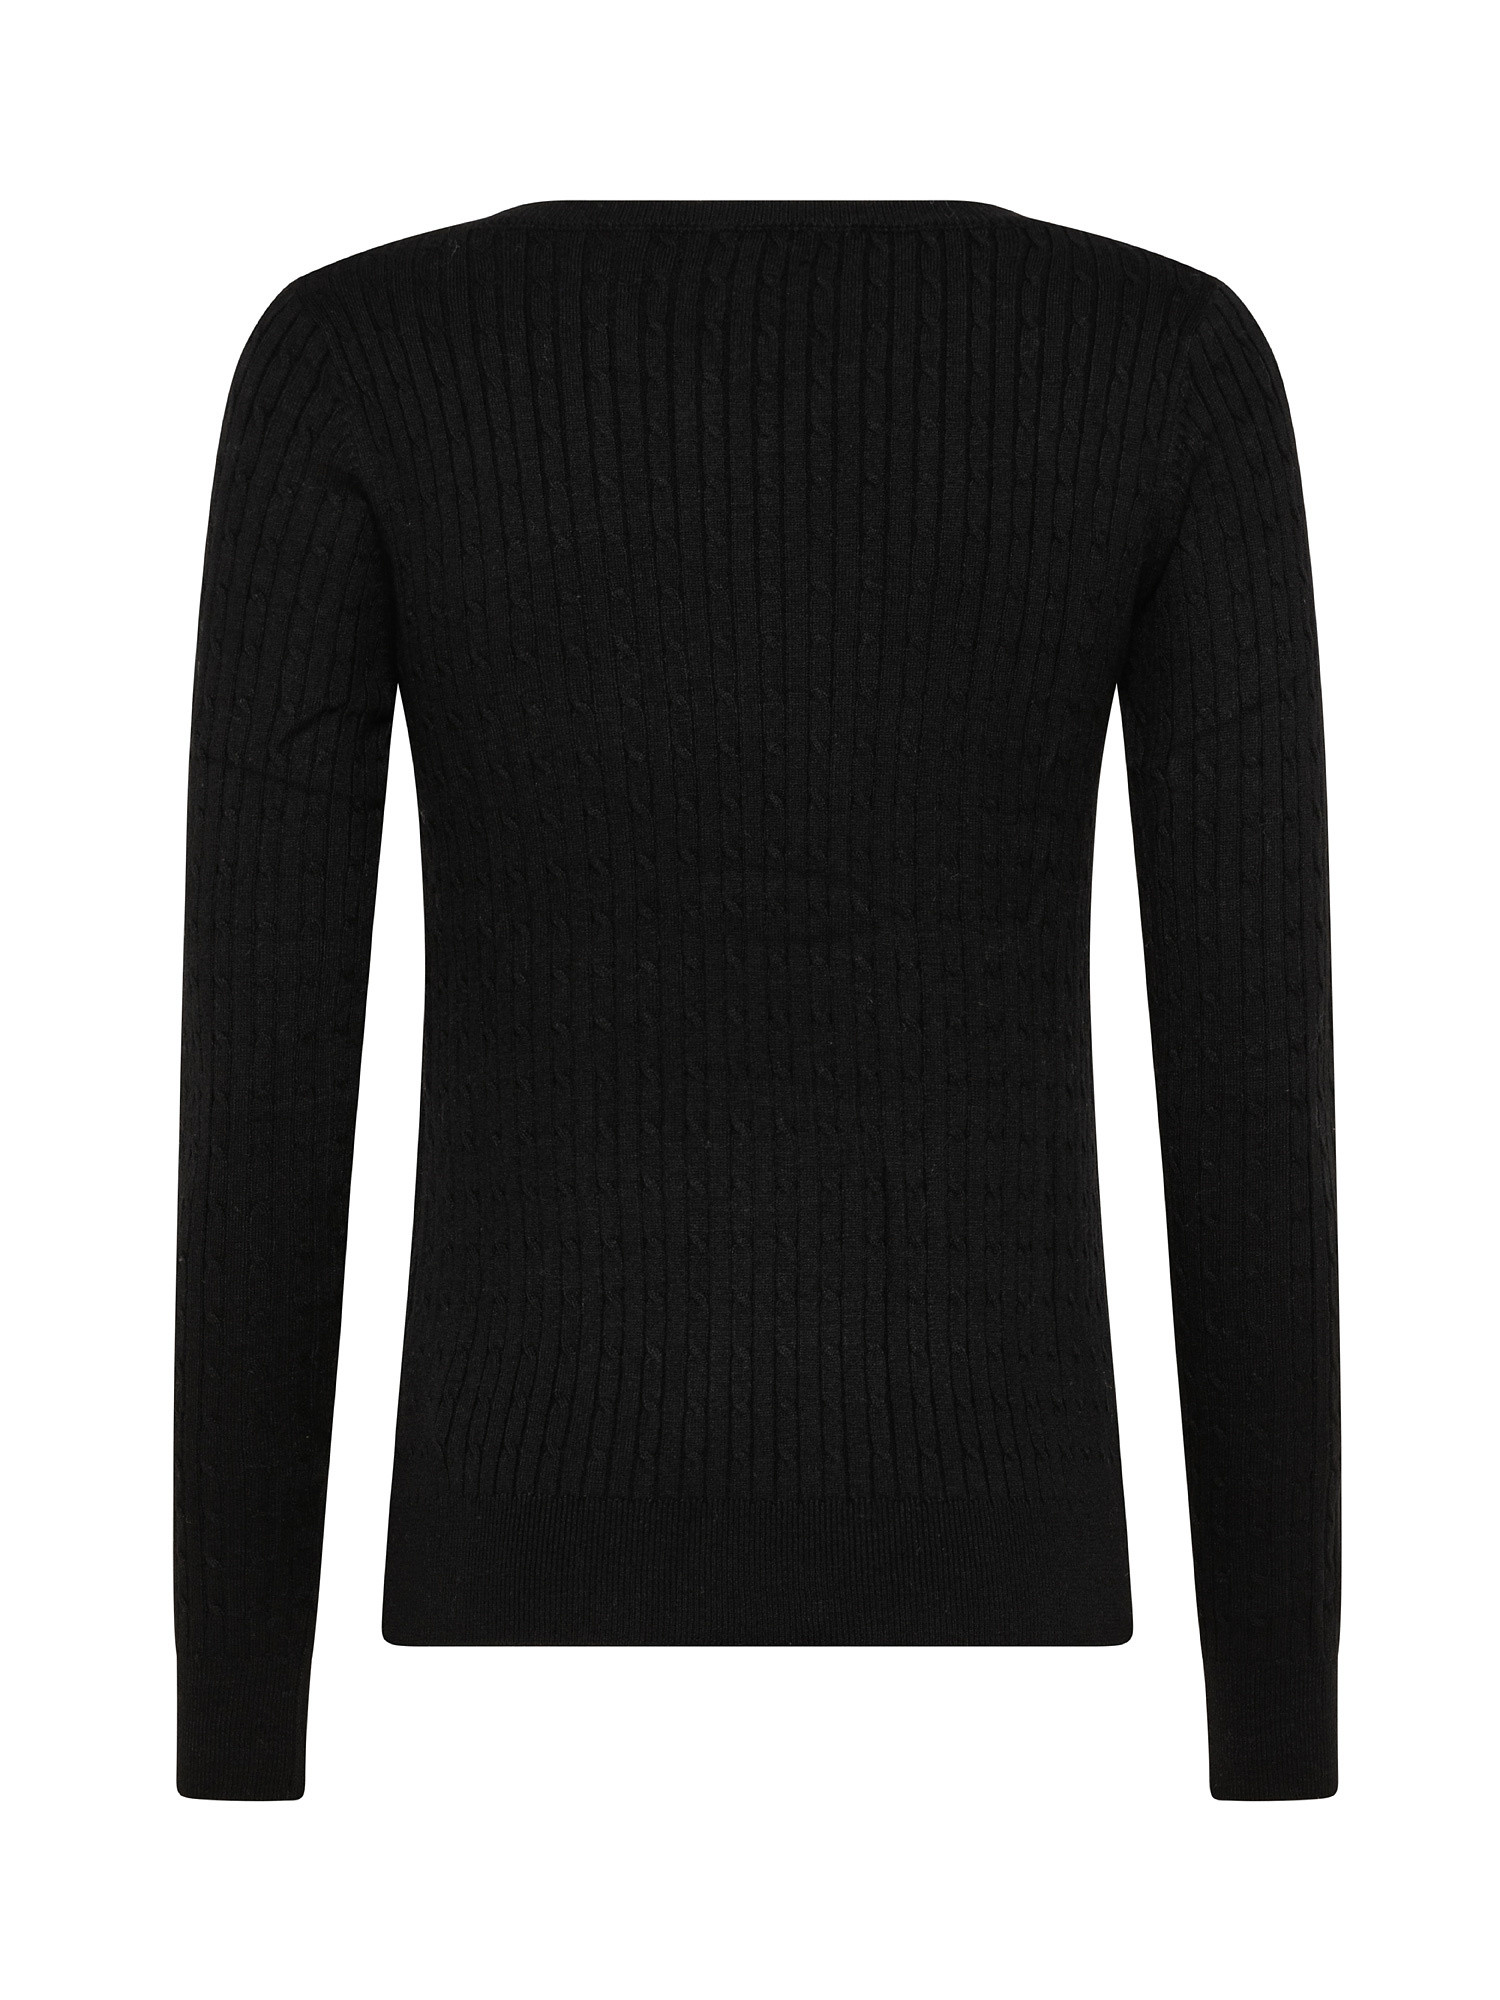 Crewneck knit pullover, Black, large image number 1